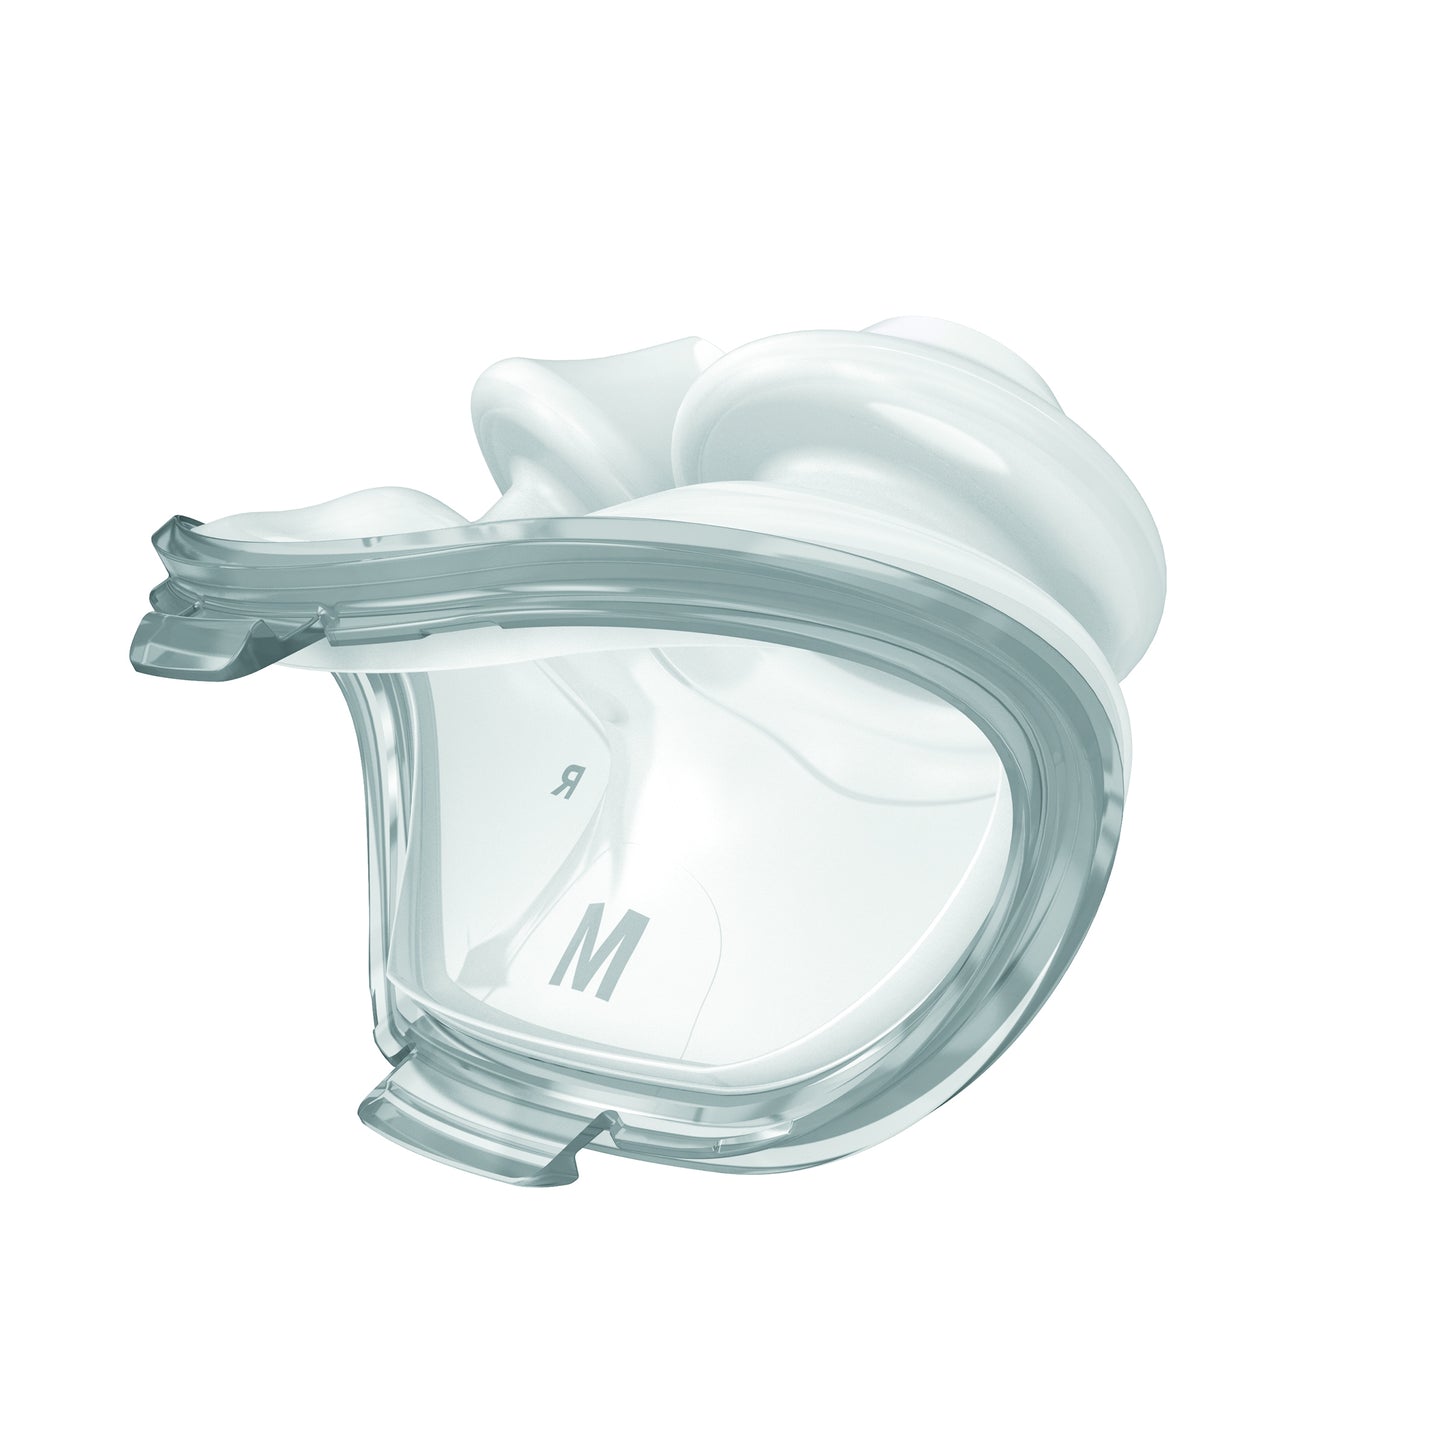 AirFit P10 nasal pillows mask 